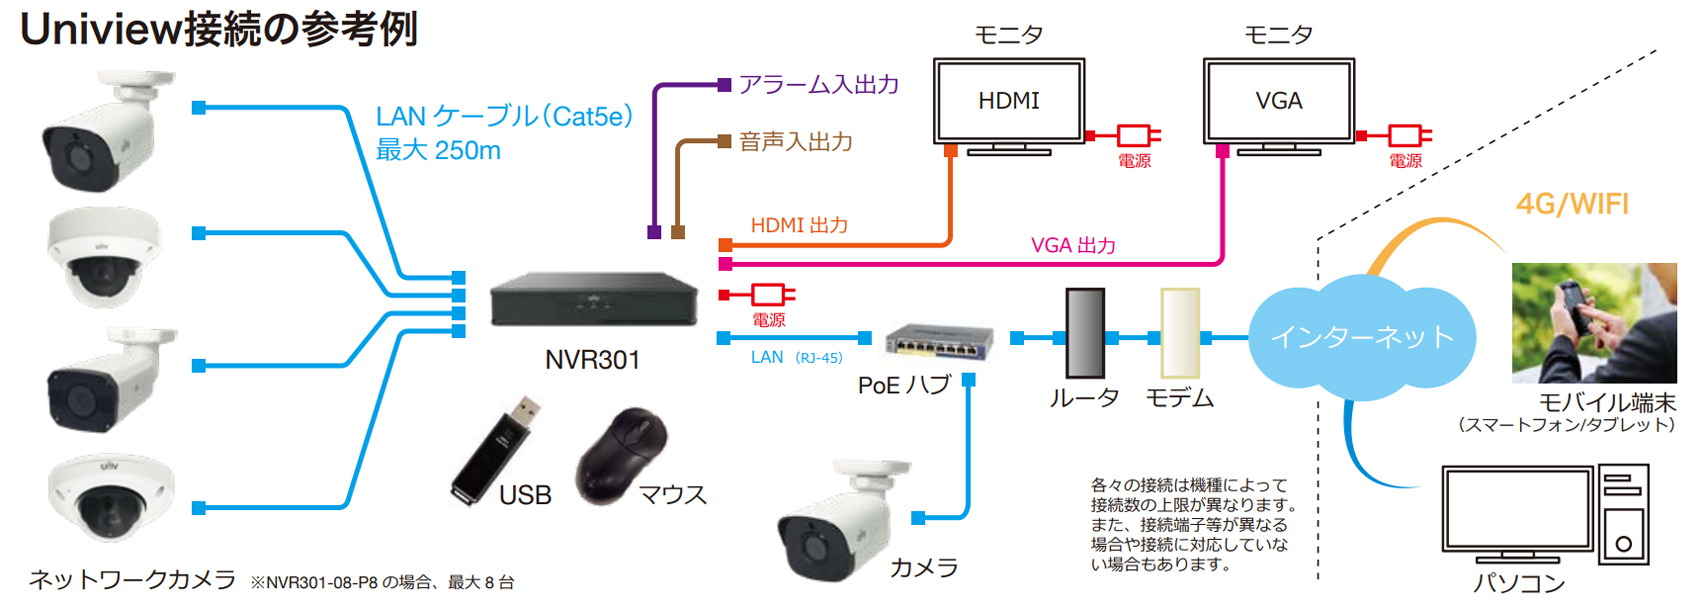 NVR301-08X-P8システム接続例